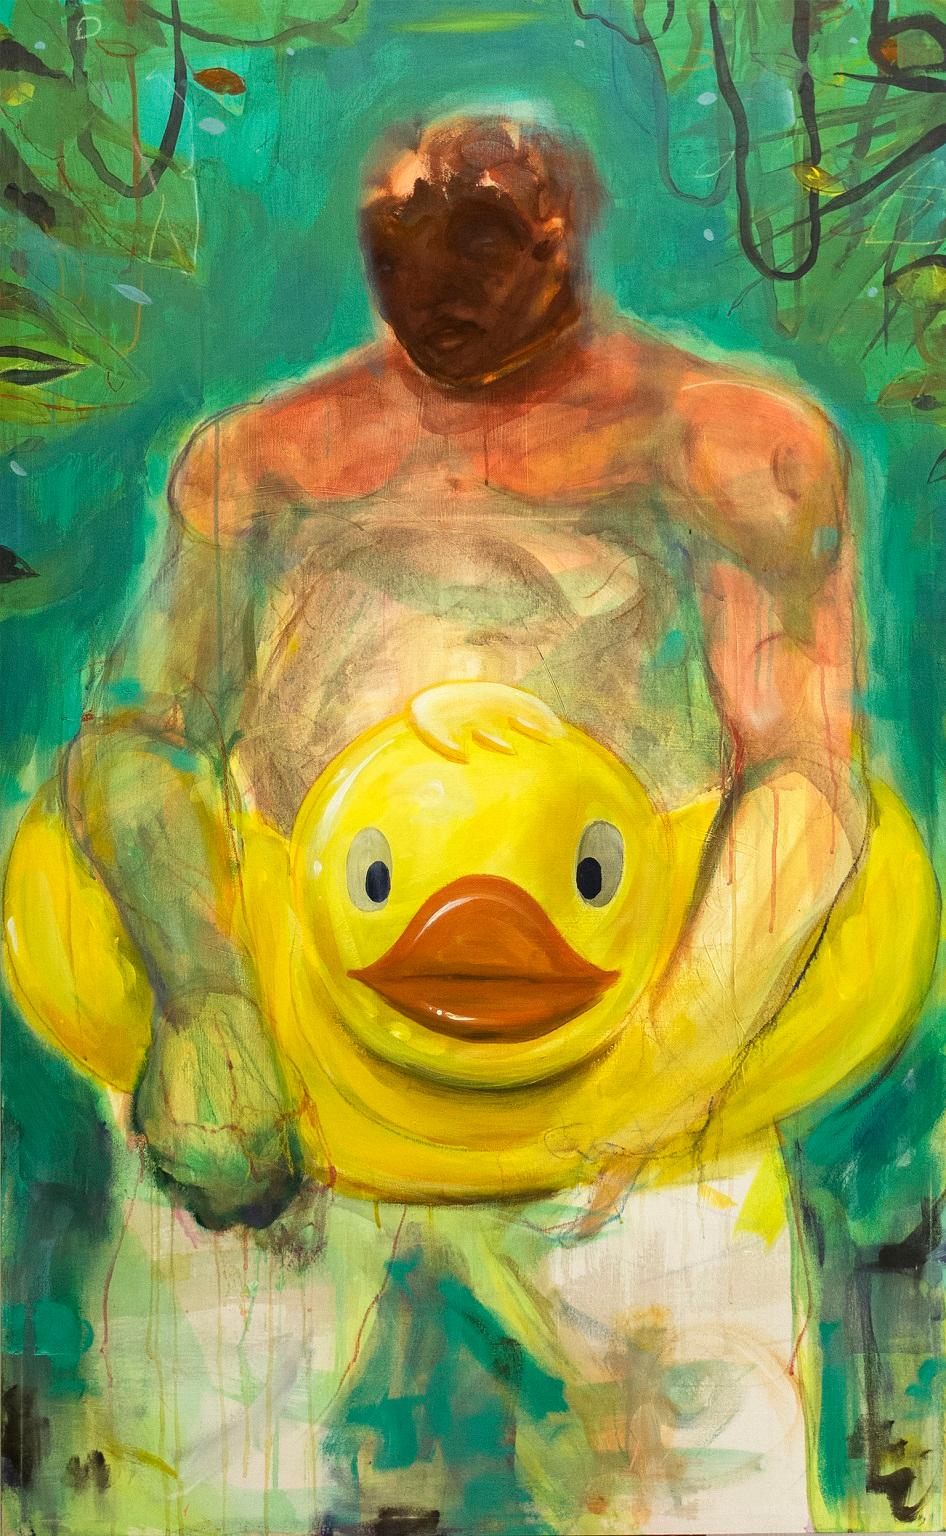 Duckface- Contemporary painting, Mixed media on Canvas, 21st Century - Mixed Media Art by Philipp Pieroth